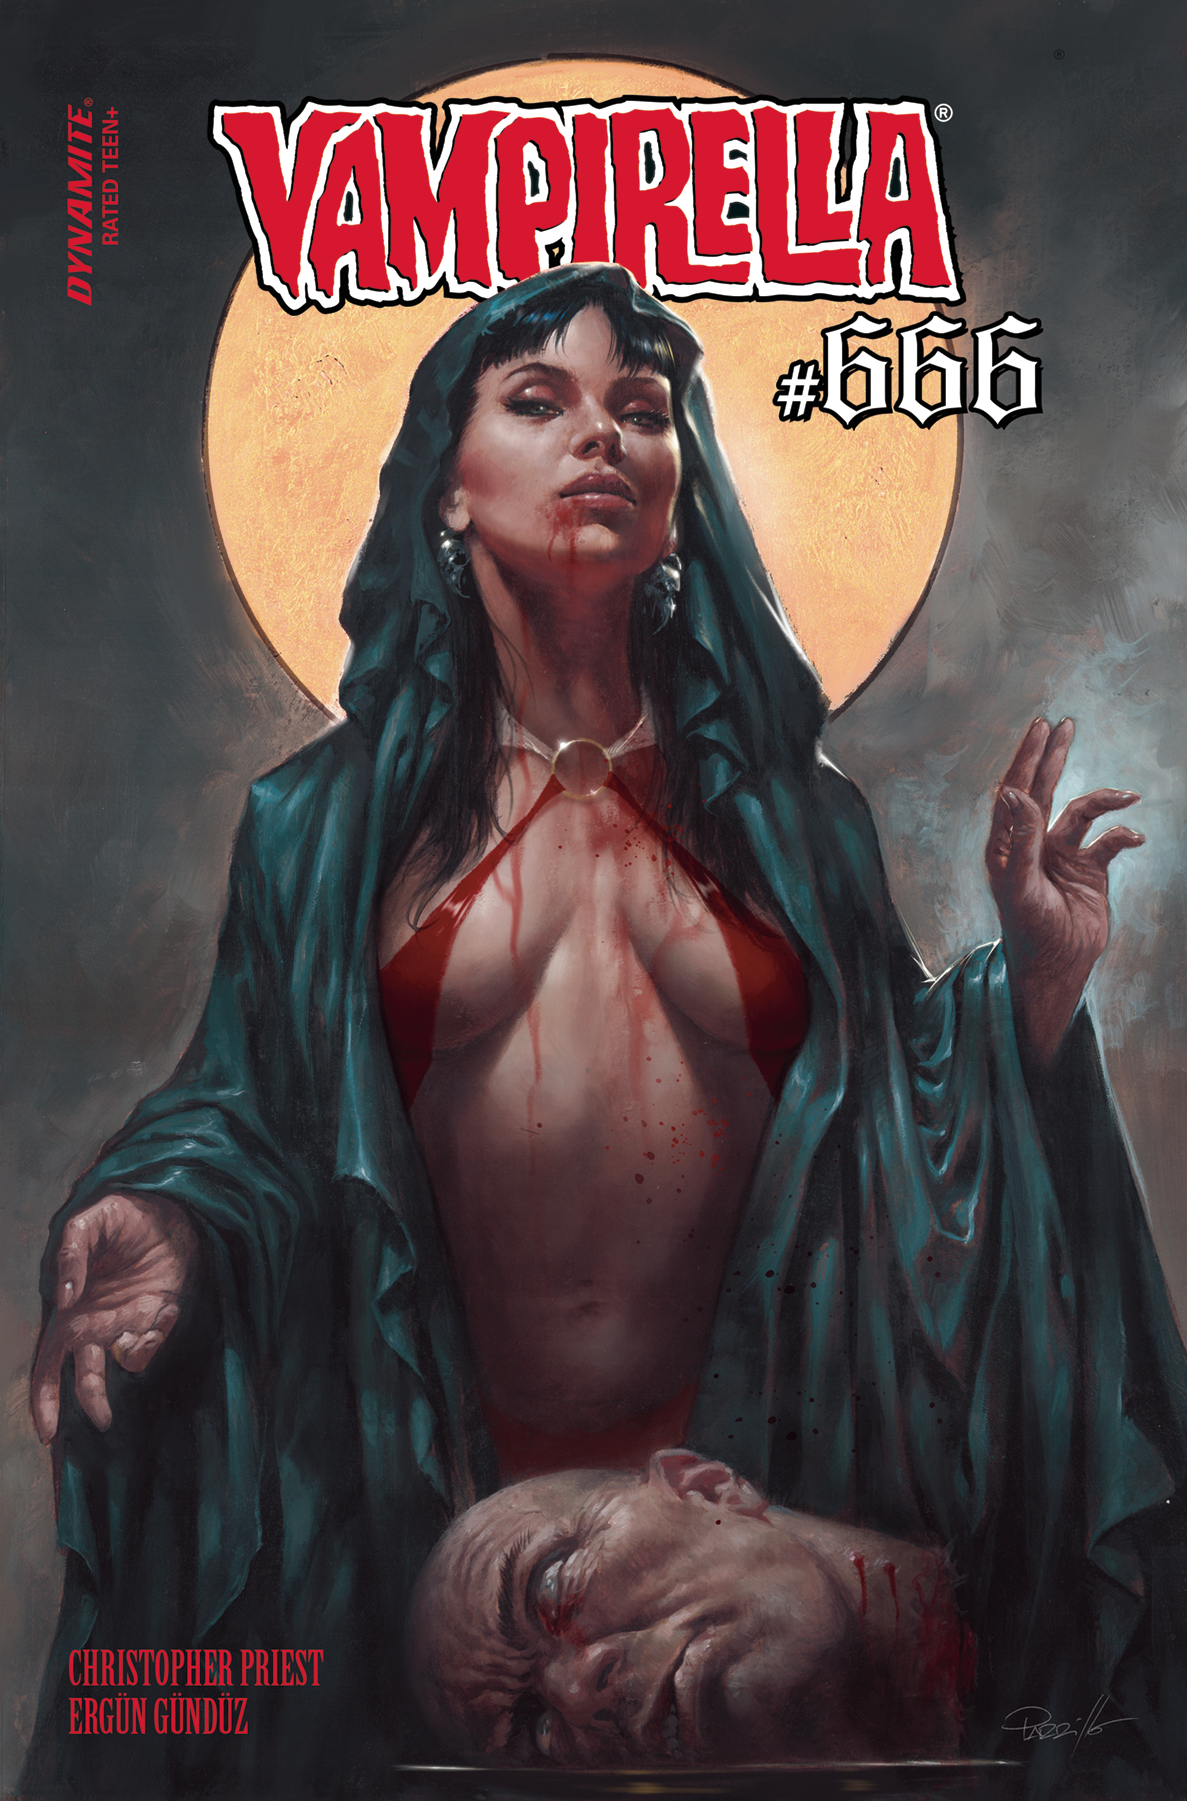 Vampirella #666 Cover A Parrillo